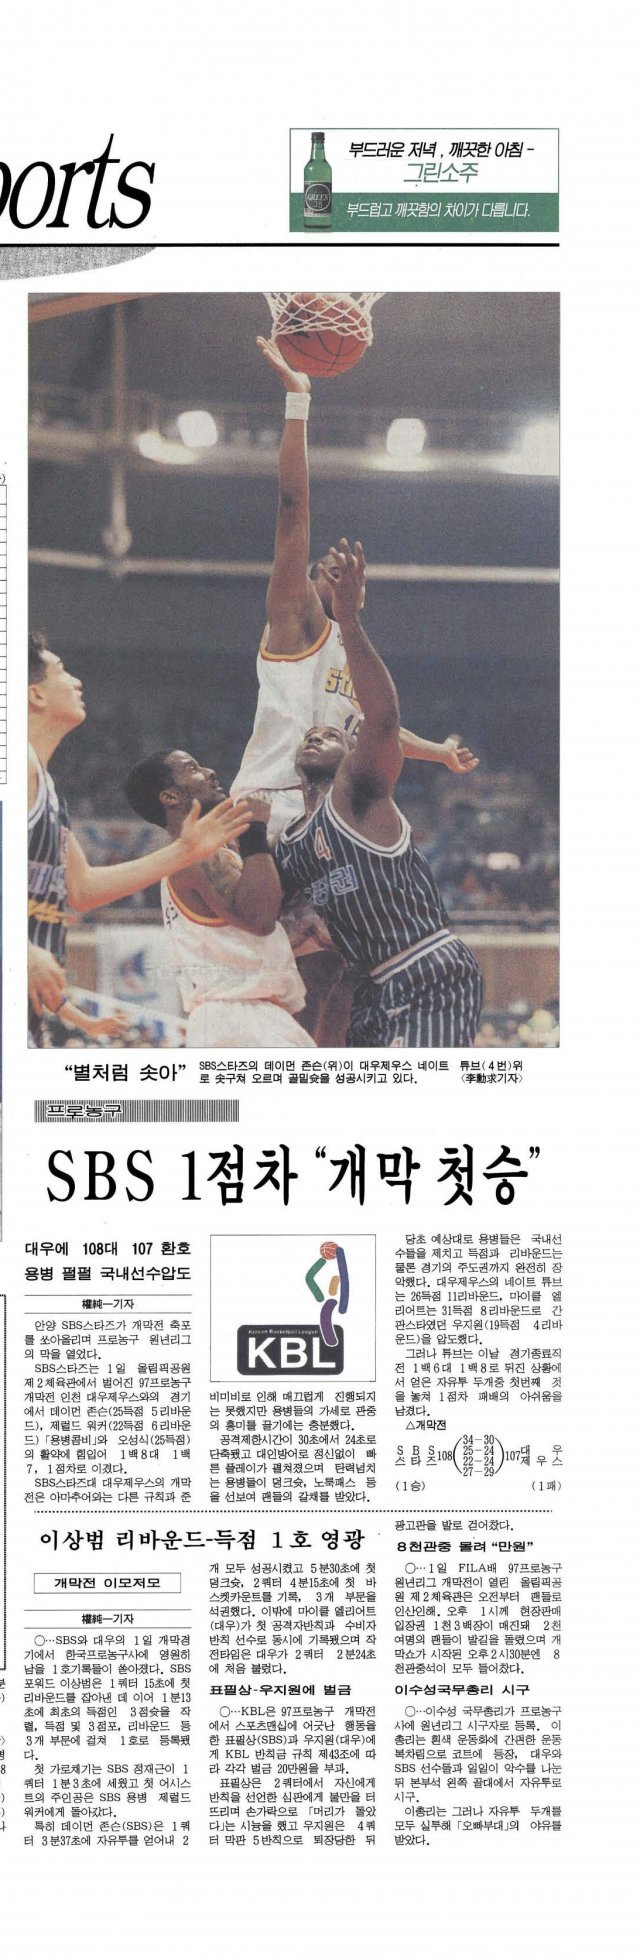 1997년 2월 프로농구 출범 첫 경기 결과를 다룬 동아일보 지면. 당시 SBS는 대우증권을 108-107로 눌렀다.